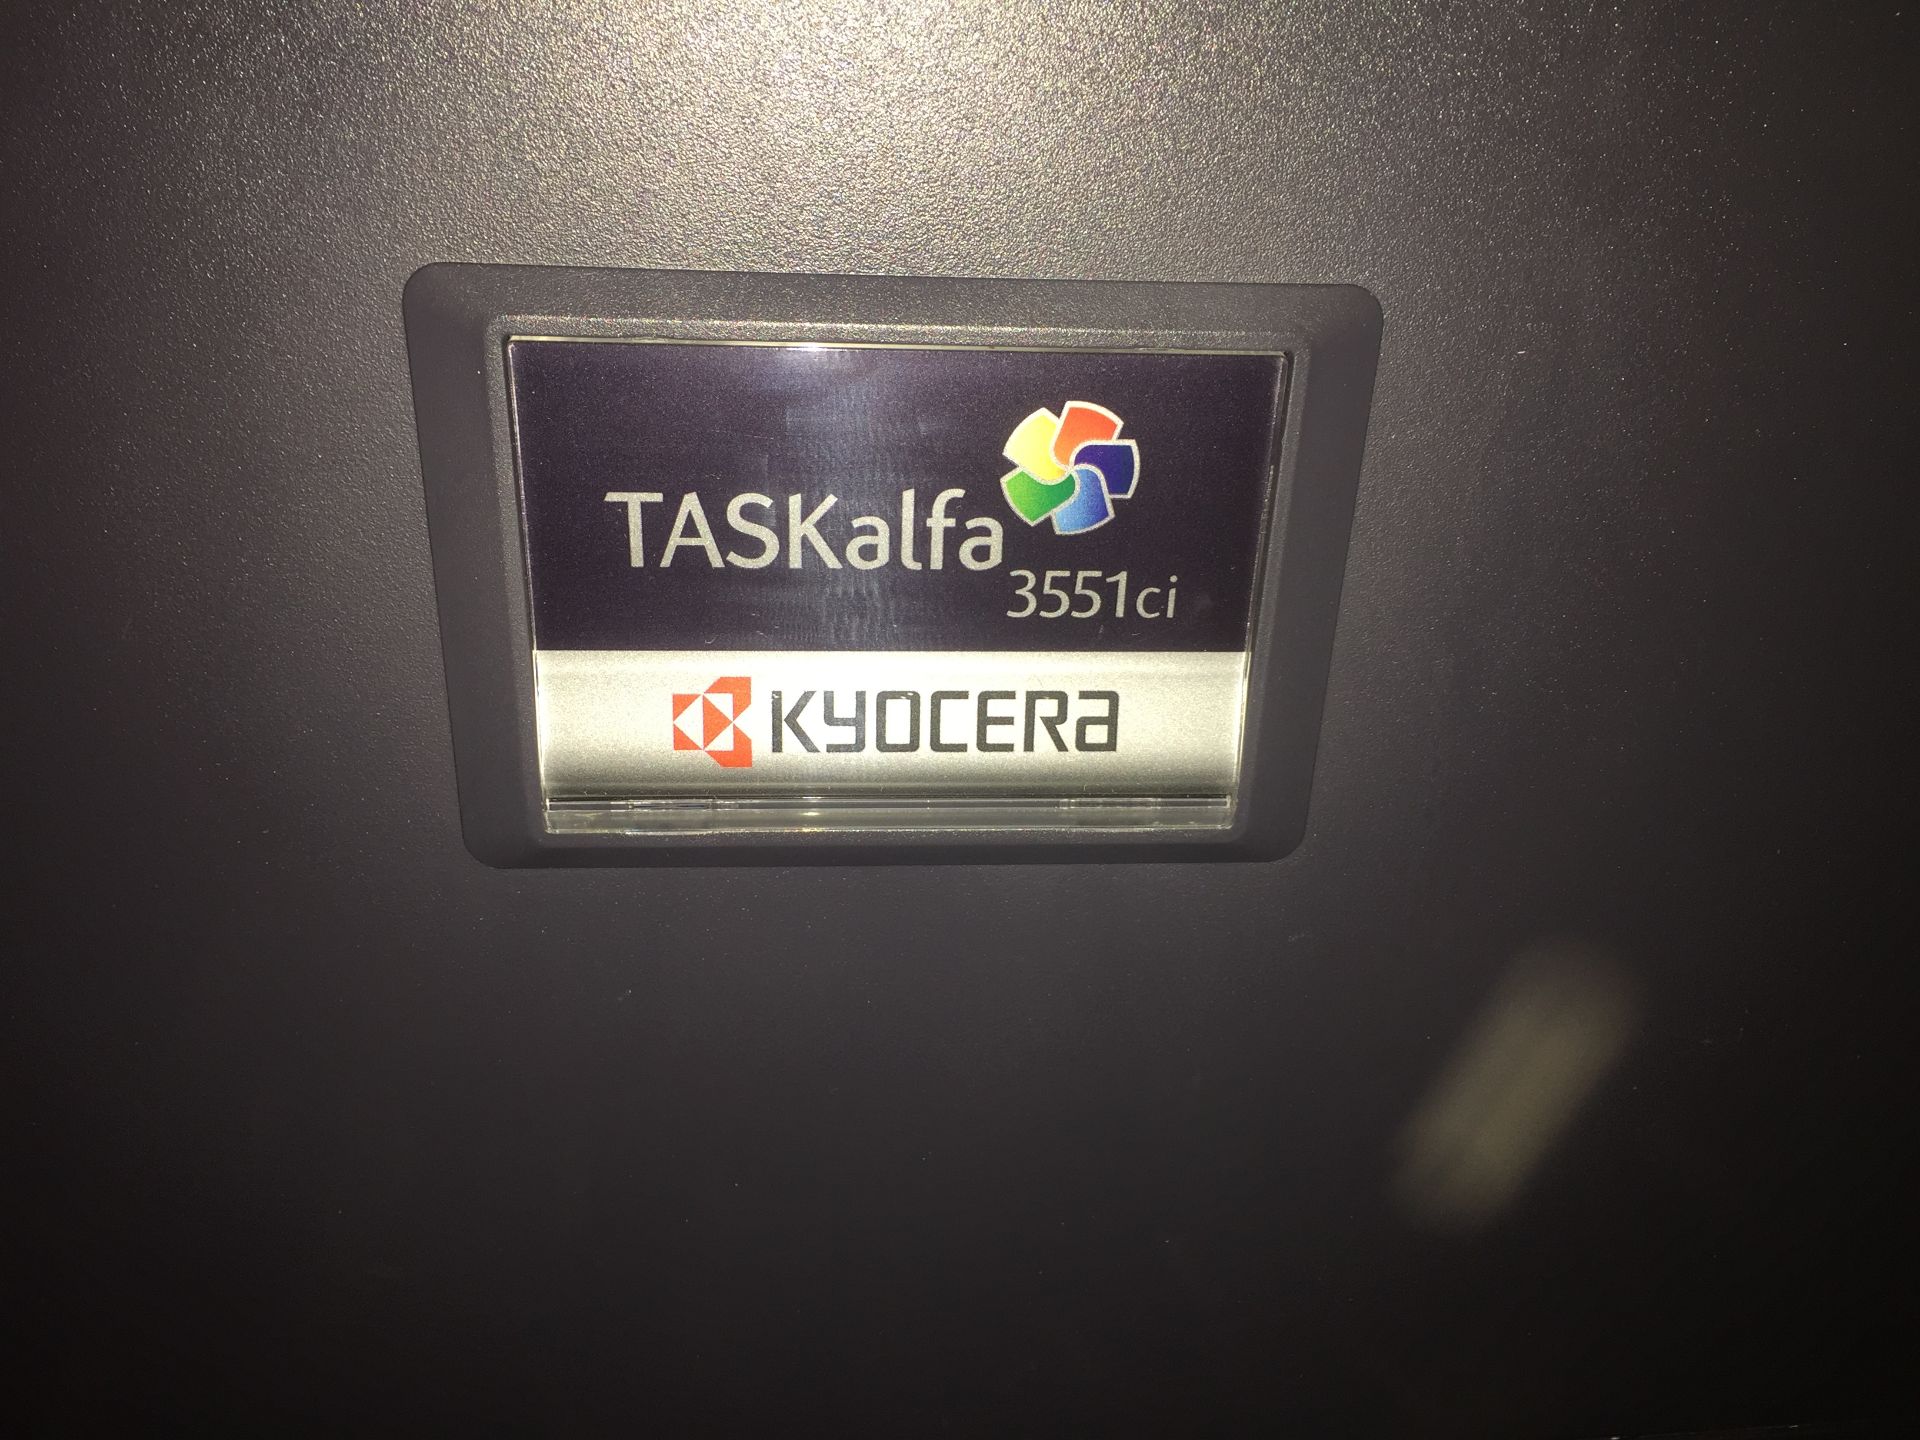 Taskalfa 3551ci KYOCERA Photocopyer - Image 3 of 5